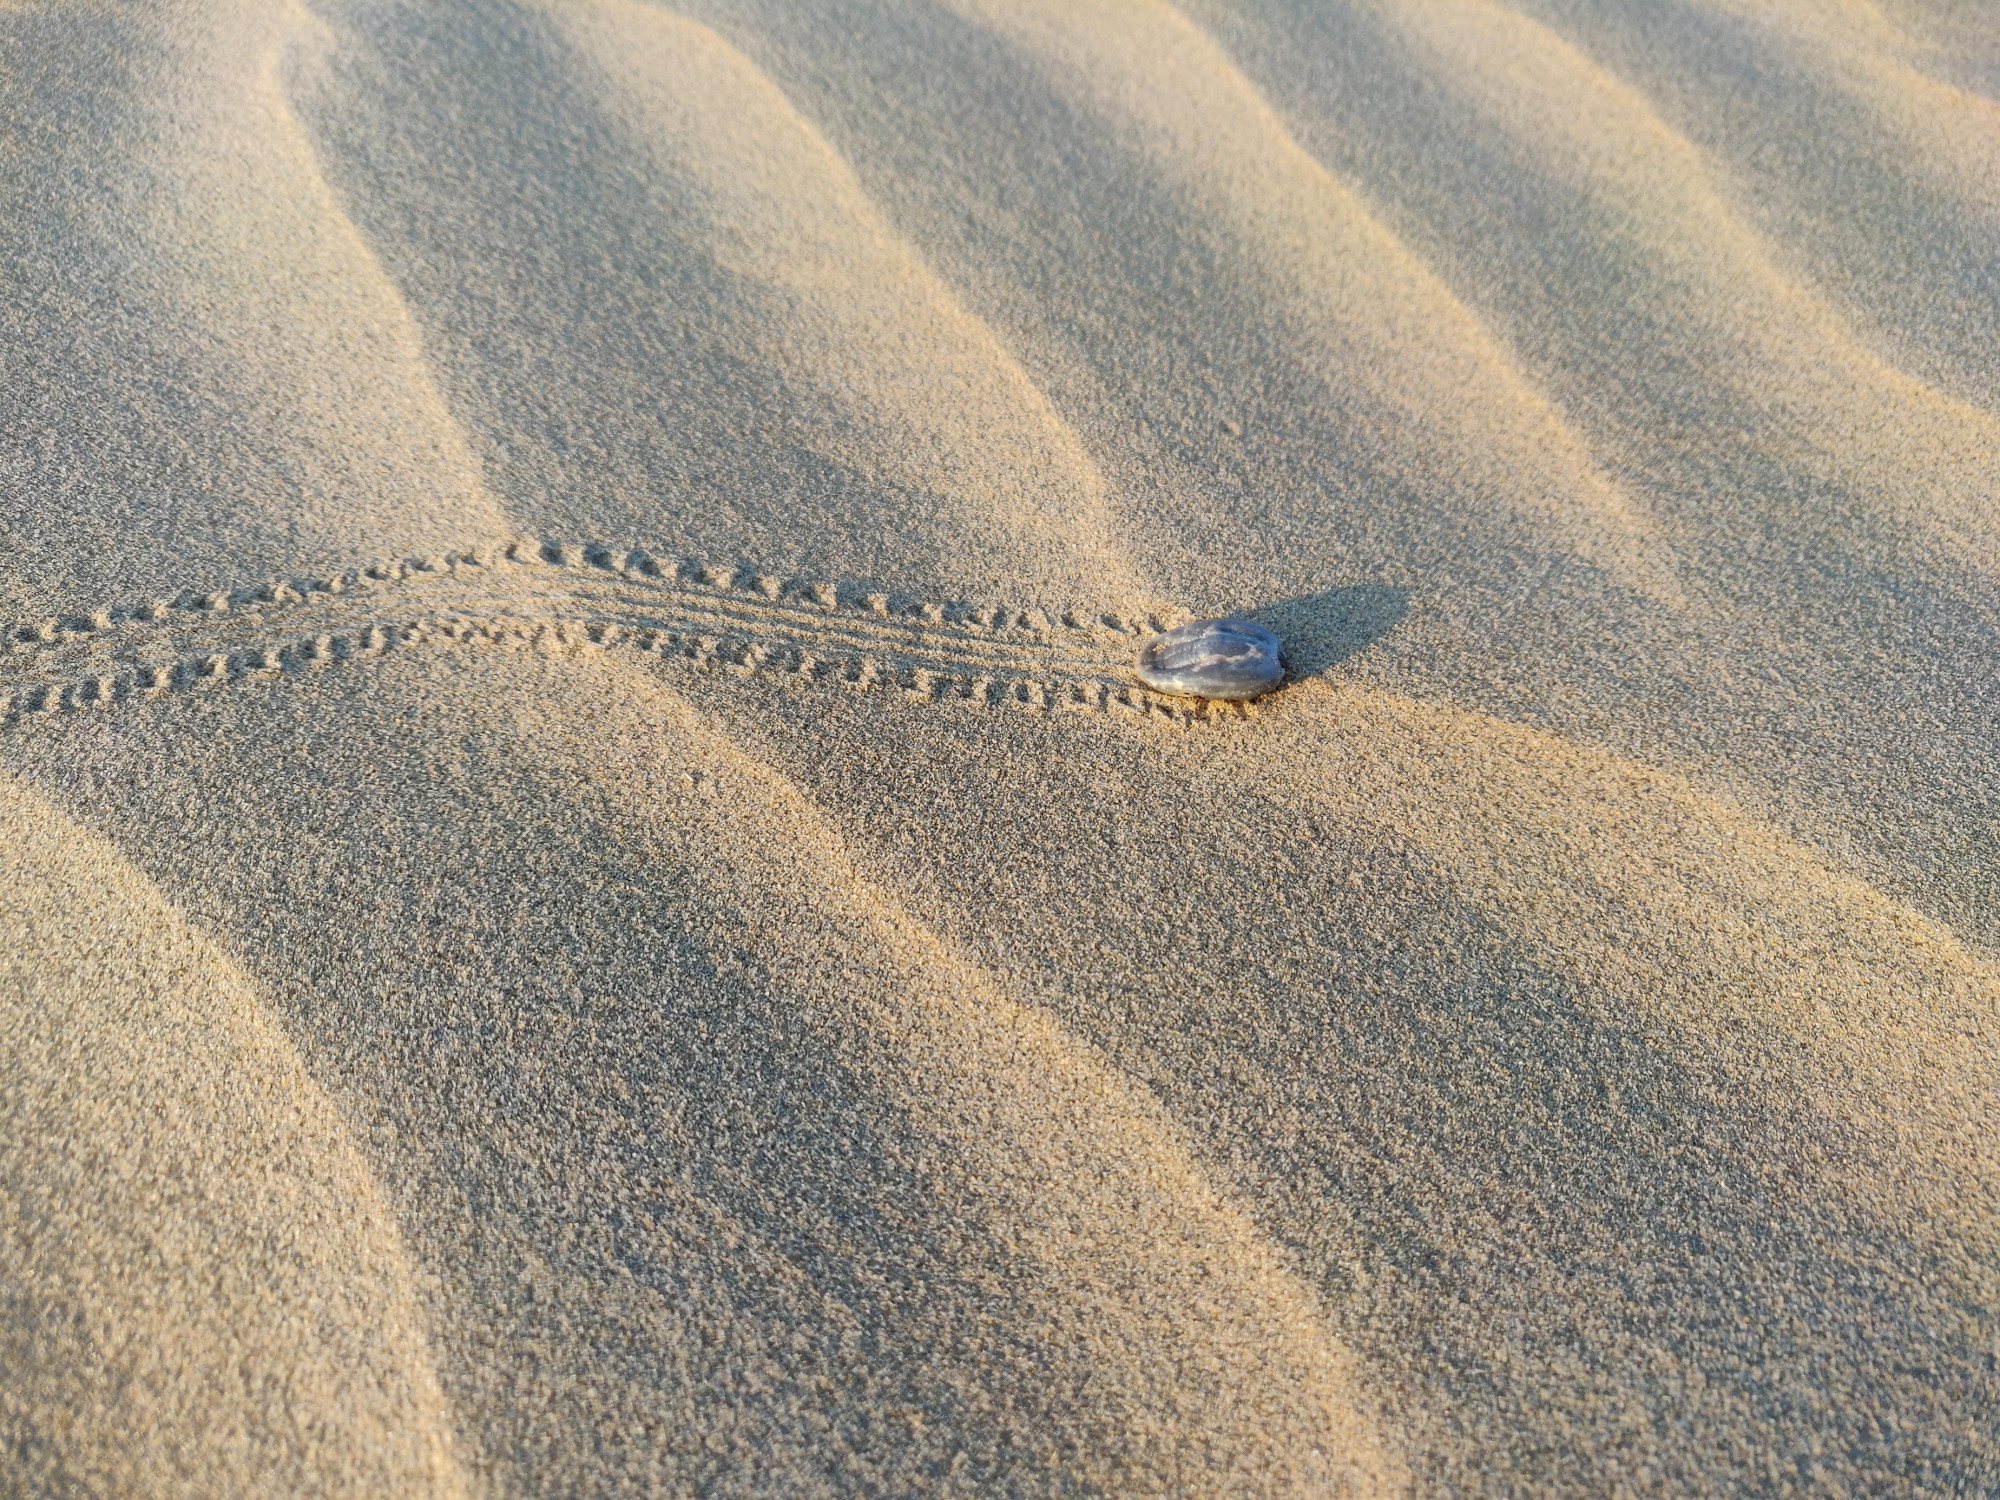 Tick crossing sand dunes